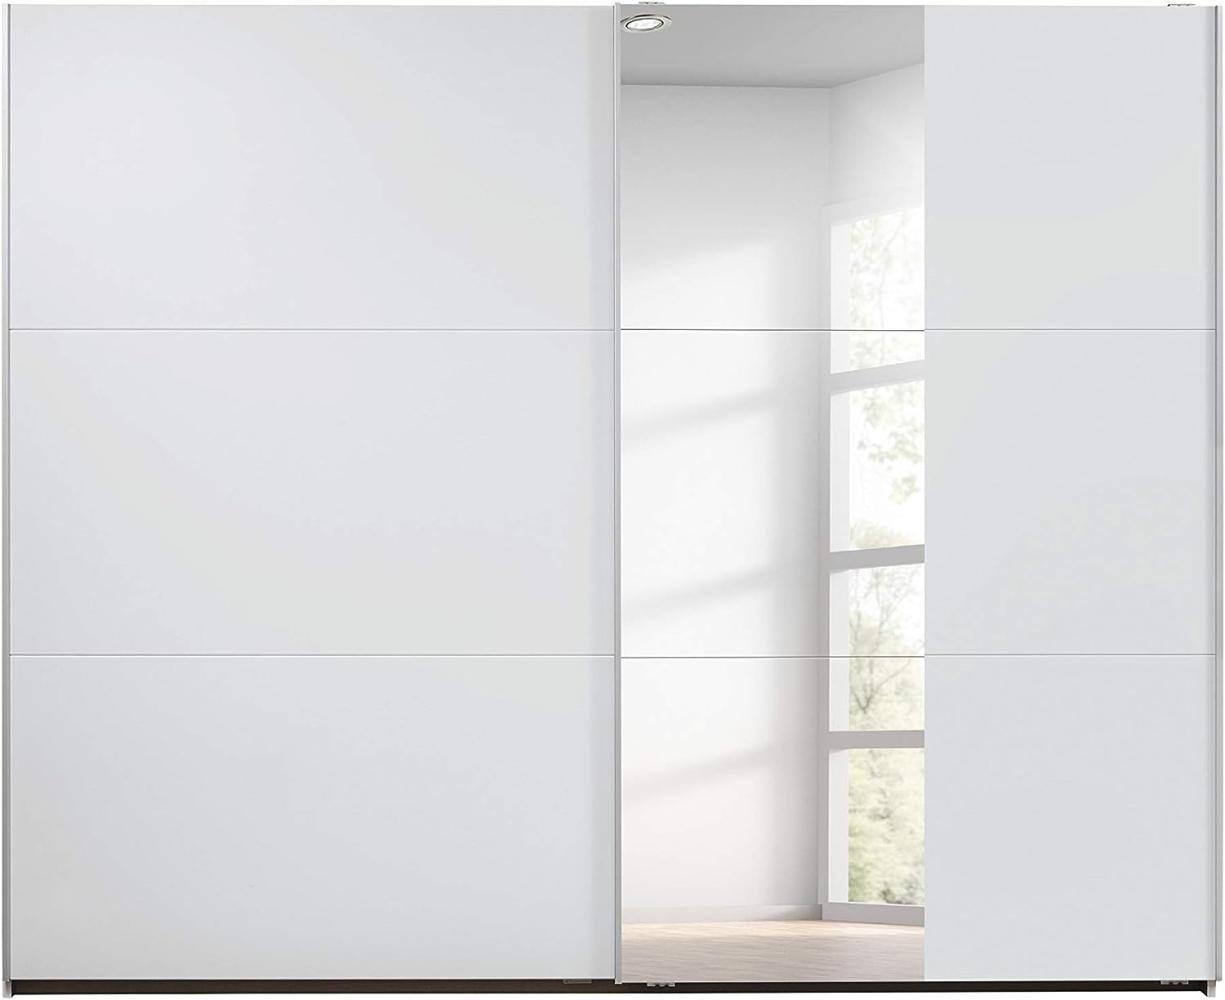 Rauch Möbel Santiago Schwebetürenschrank, Holz, Weiß, BxHxT: 261x210x59 cm Bild 1